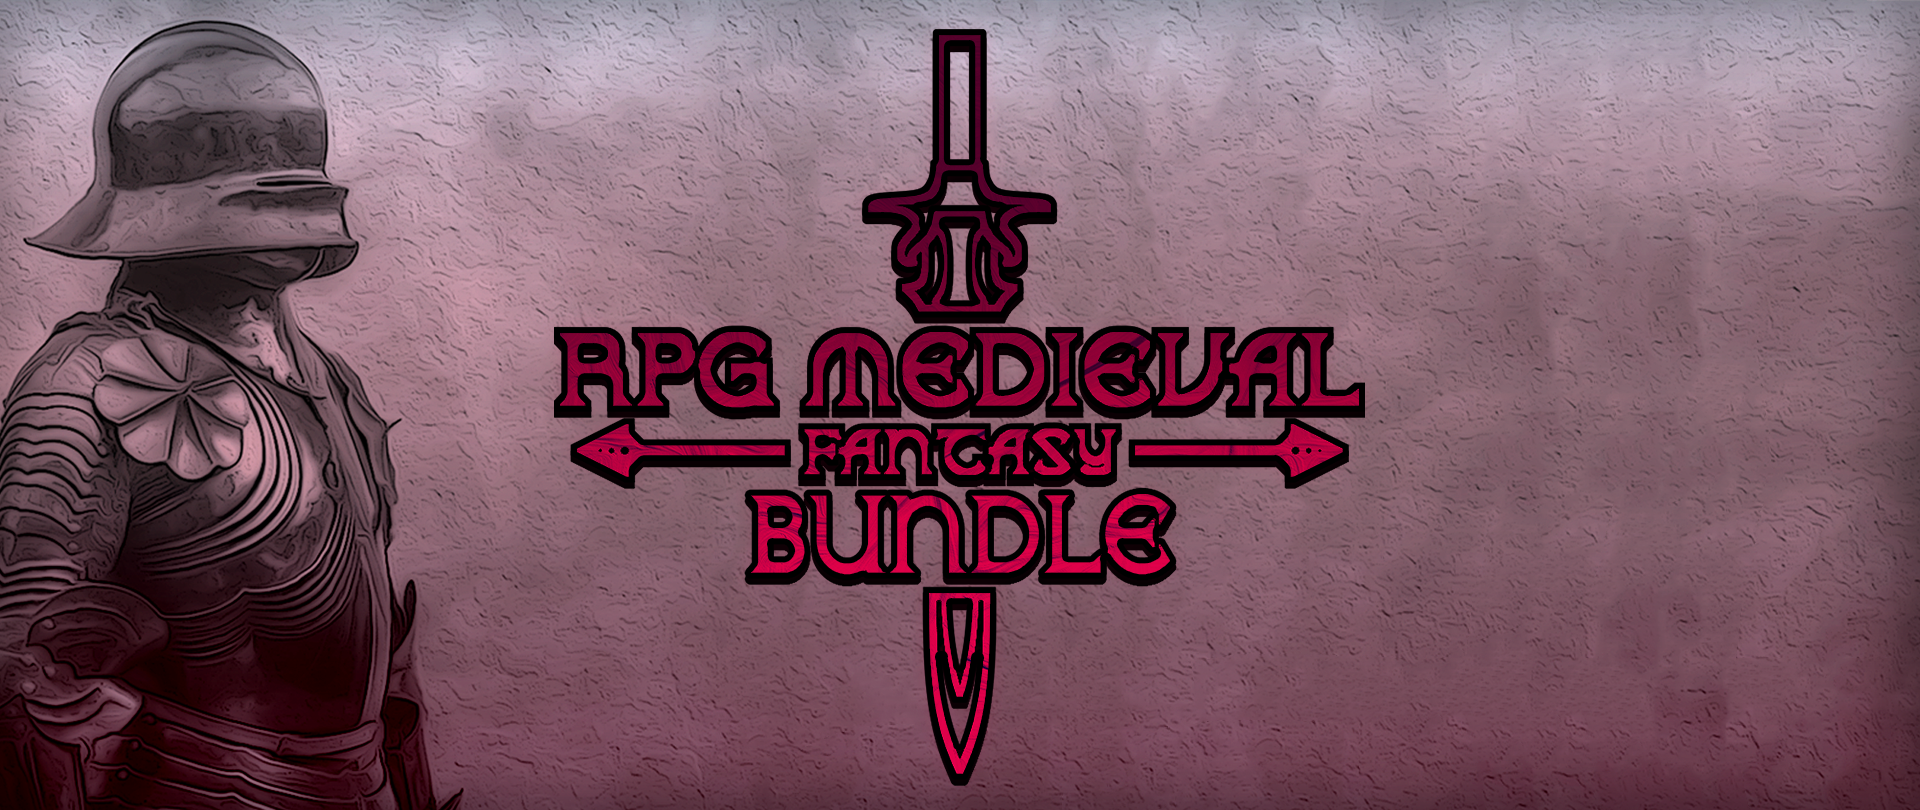 RPG Medieval Music Bundle